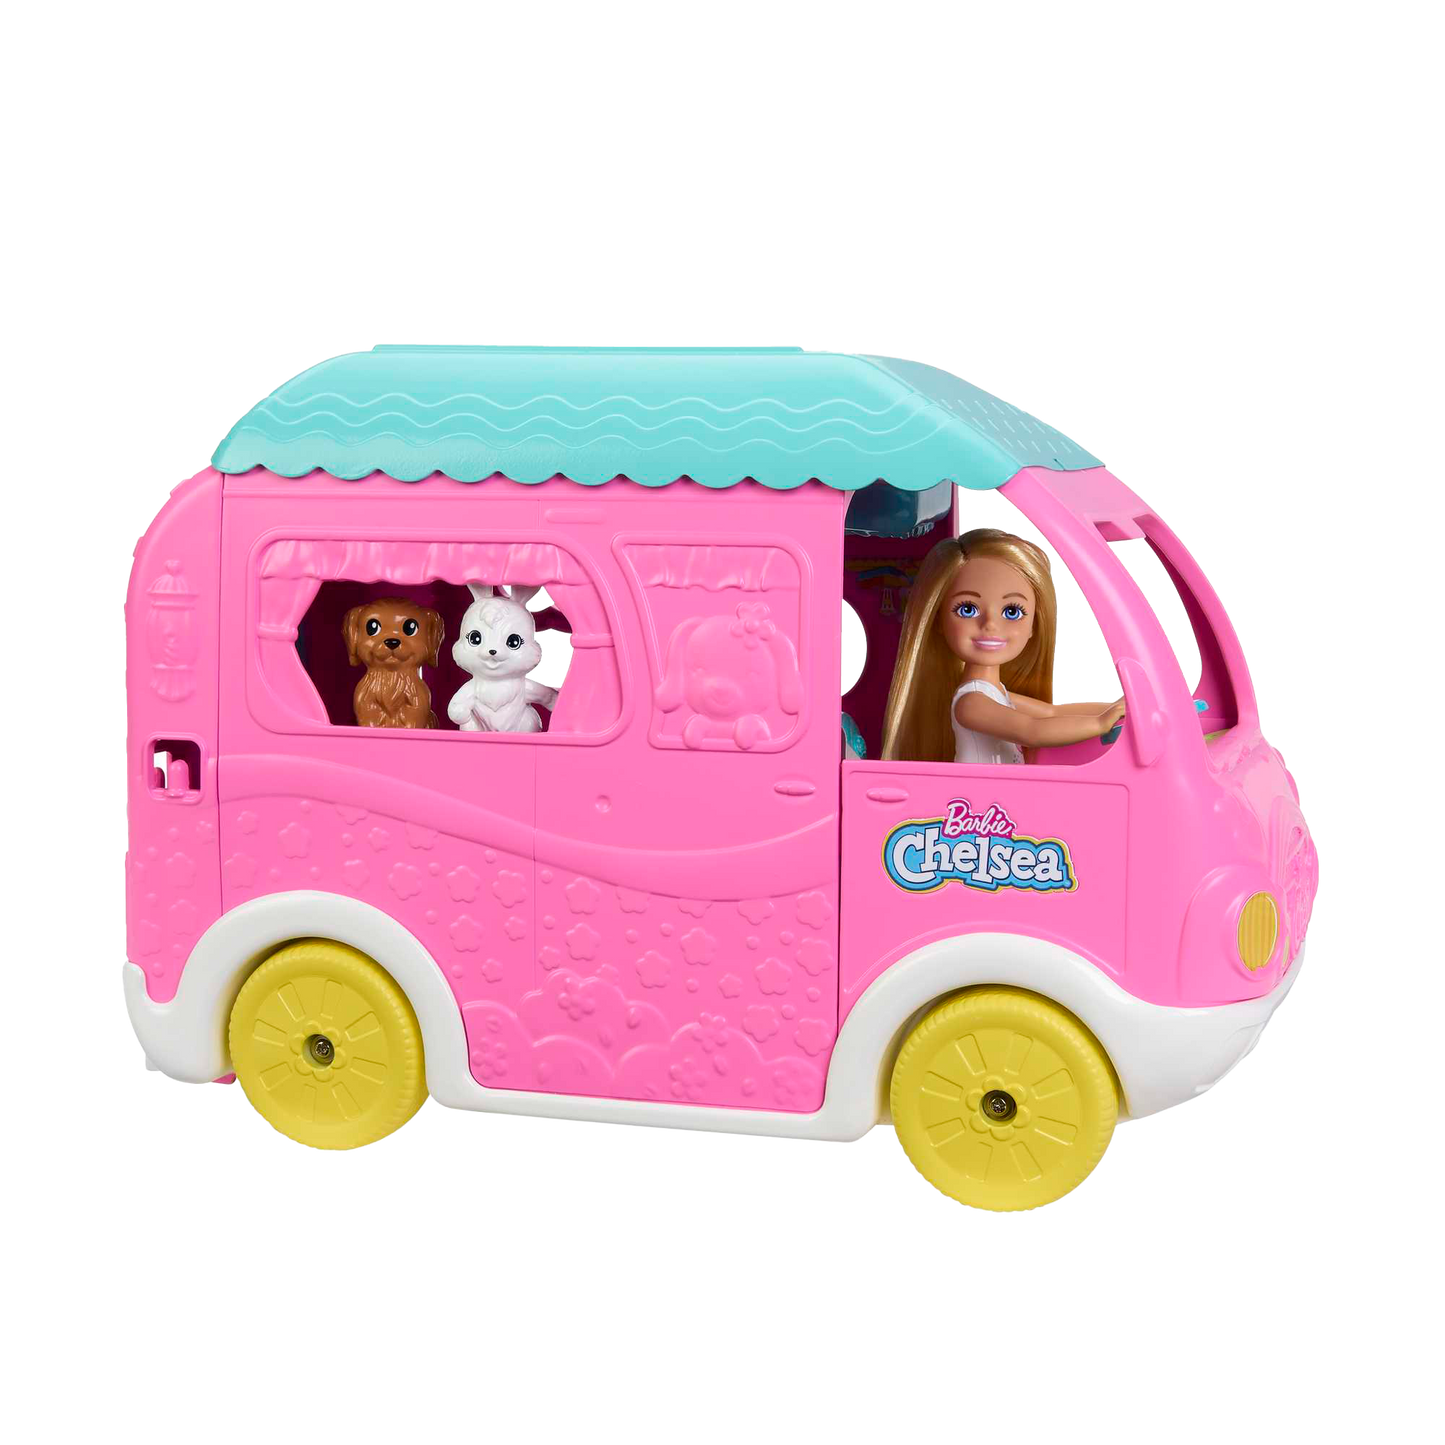 Barbie Chelsea 2-in-1 Camper Playset